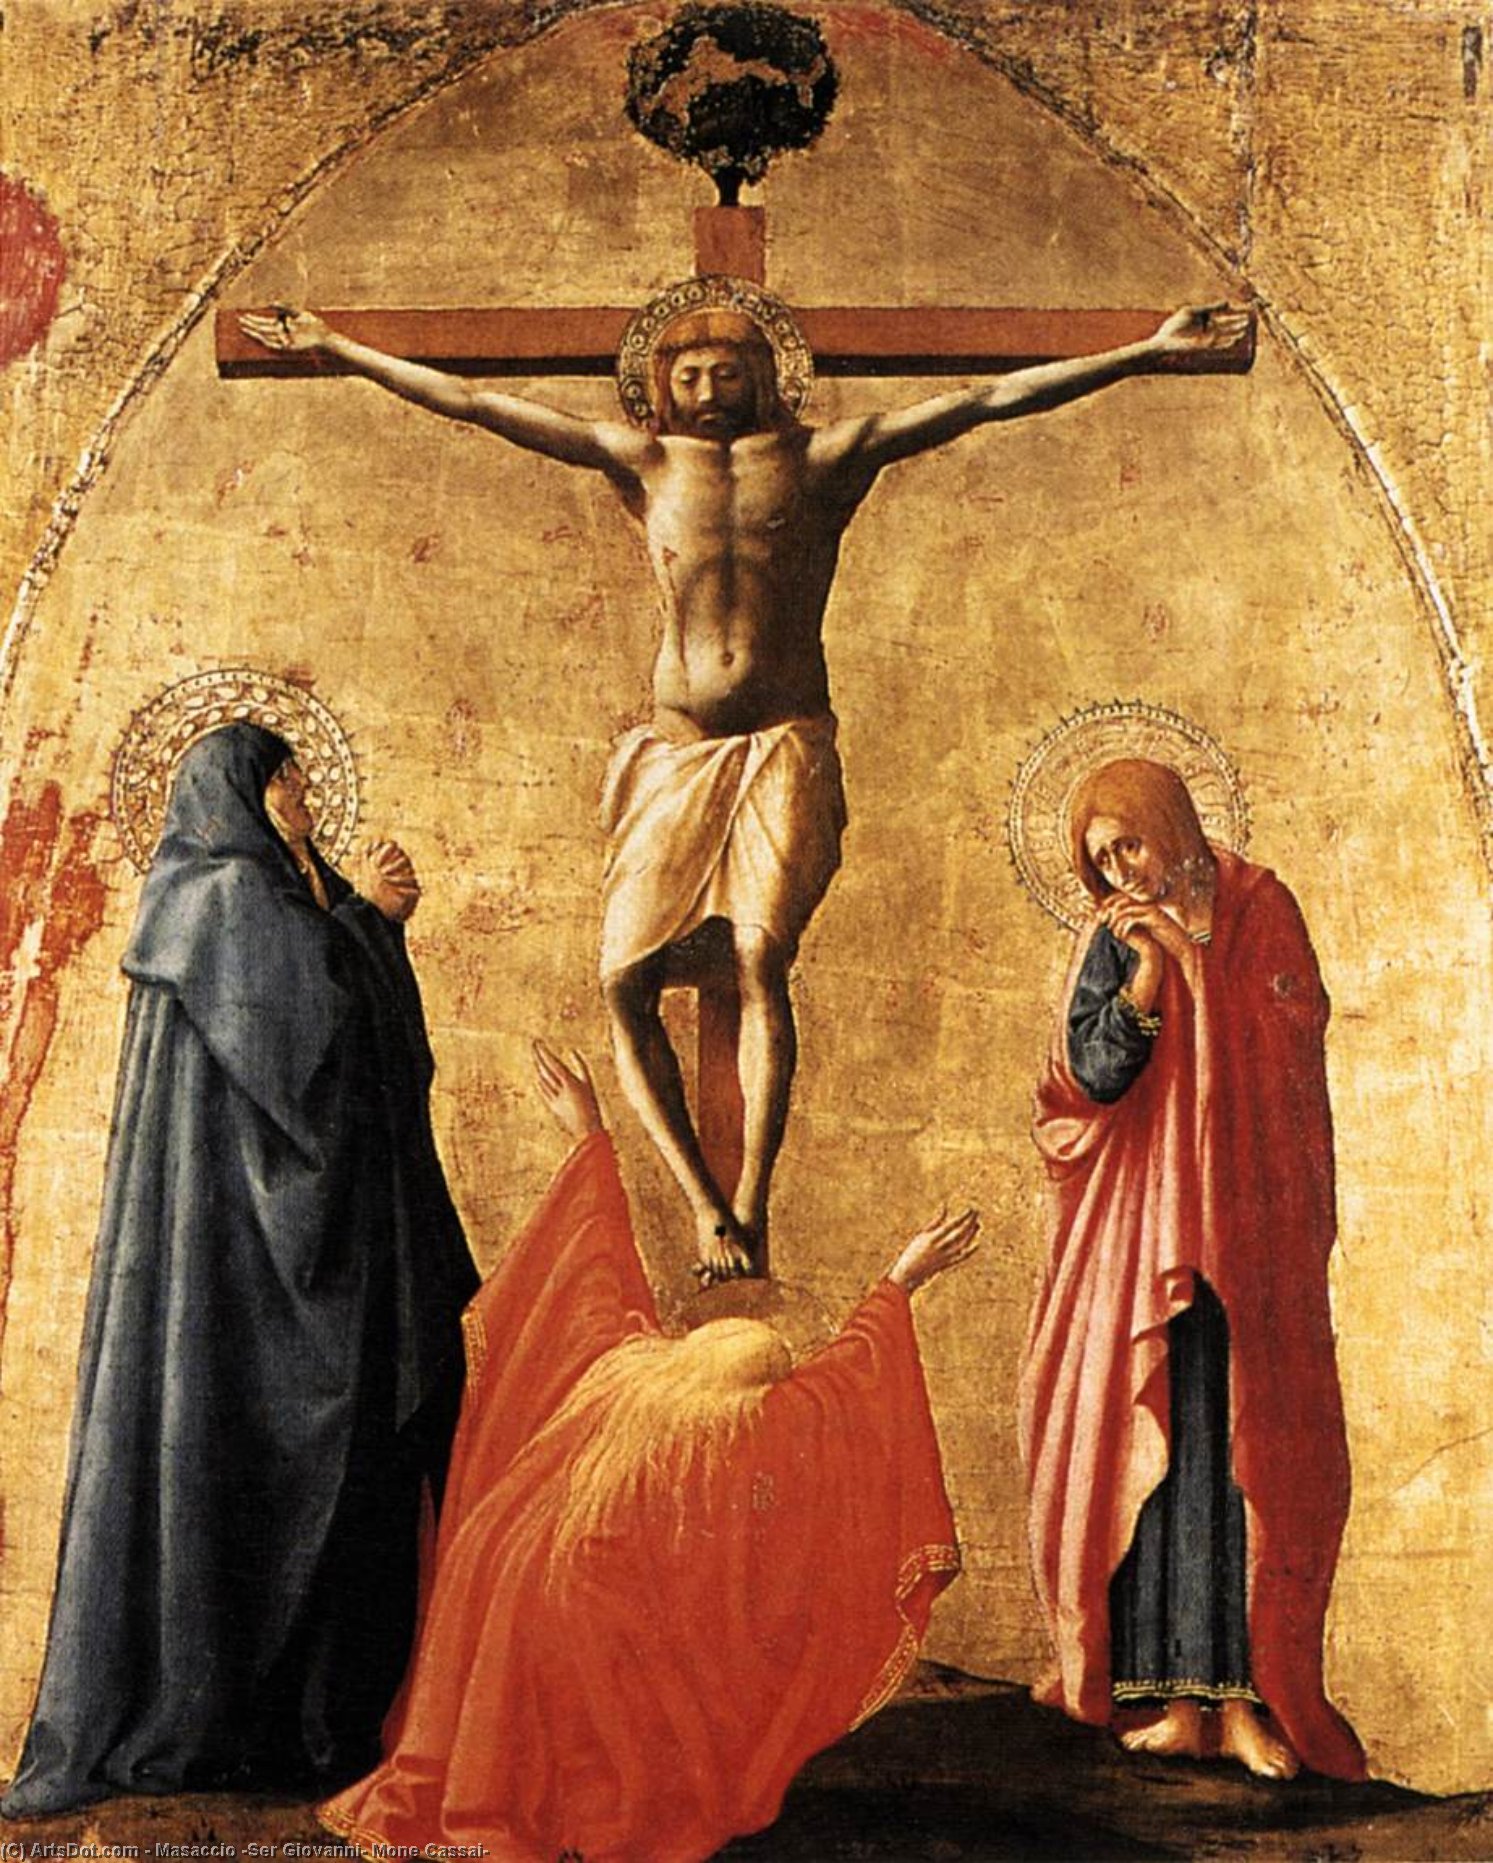 WikiOO.org - Encyclopedia of Fine Arts - Maleri, Artwork Masaccio (Ser Giovanni, Mone Cassai) - Crucifixion